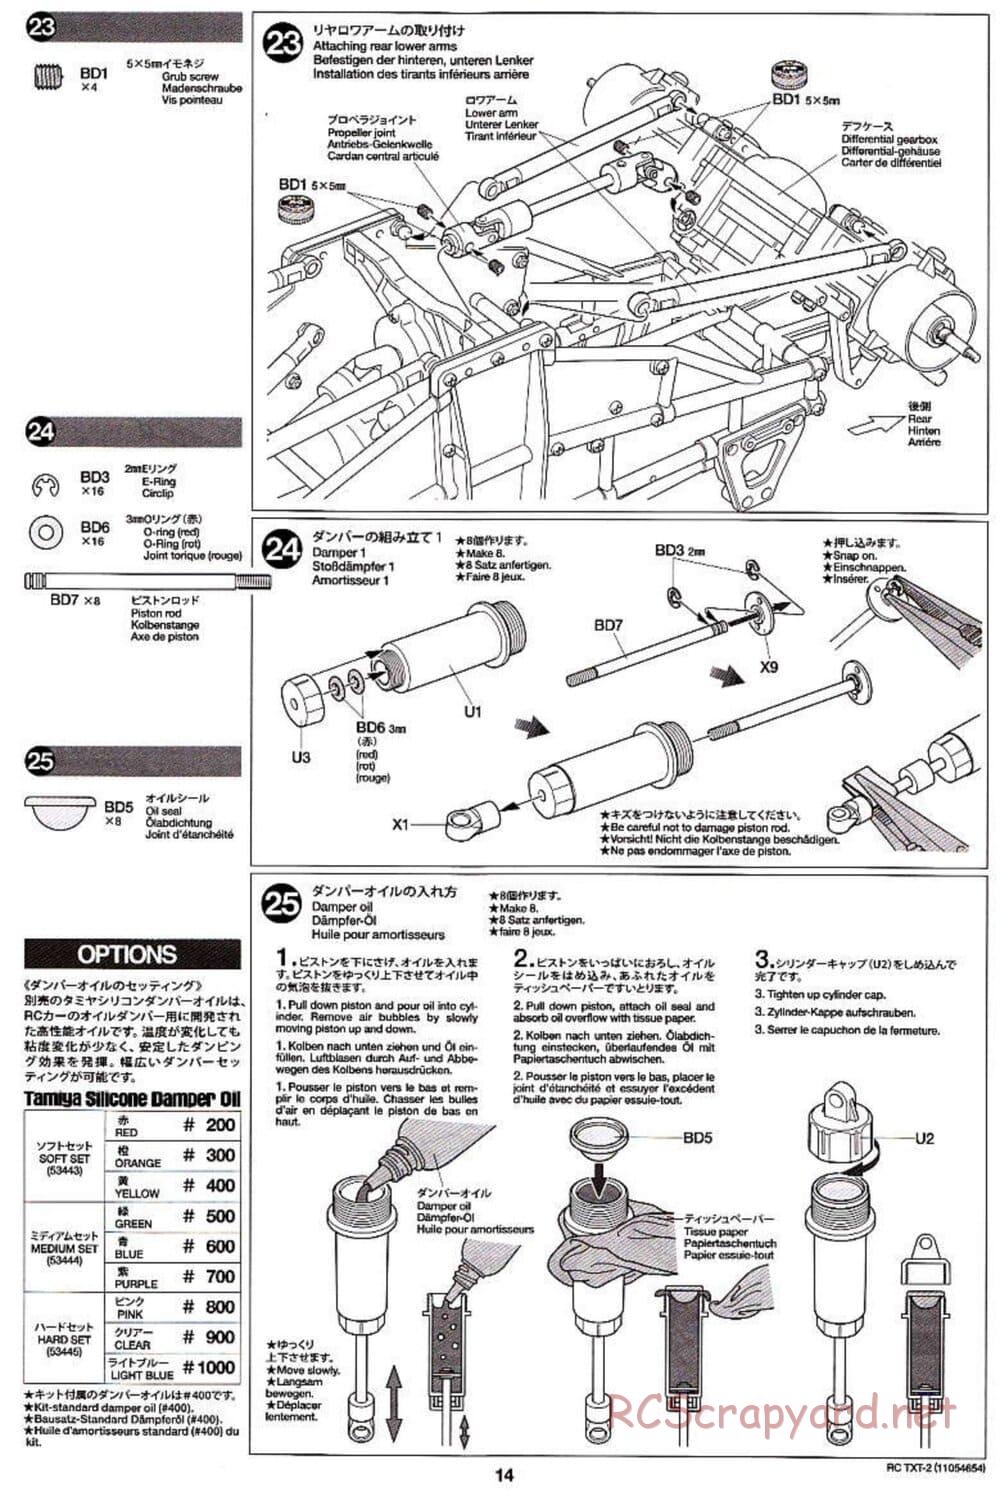 Tamiya - TXT-2 Chassis - Manual - Page 14